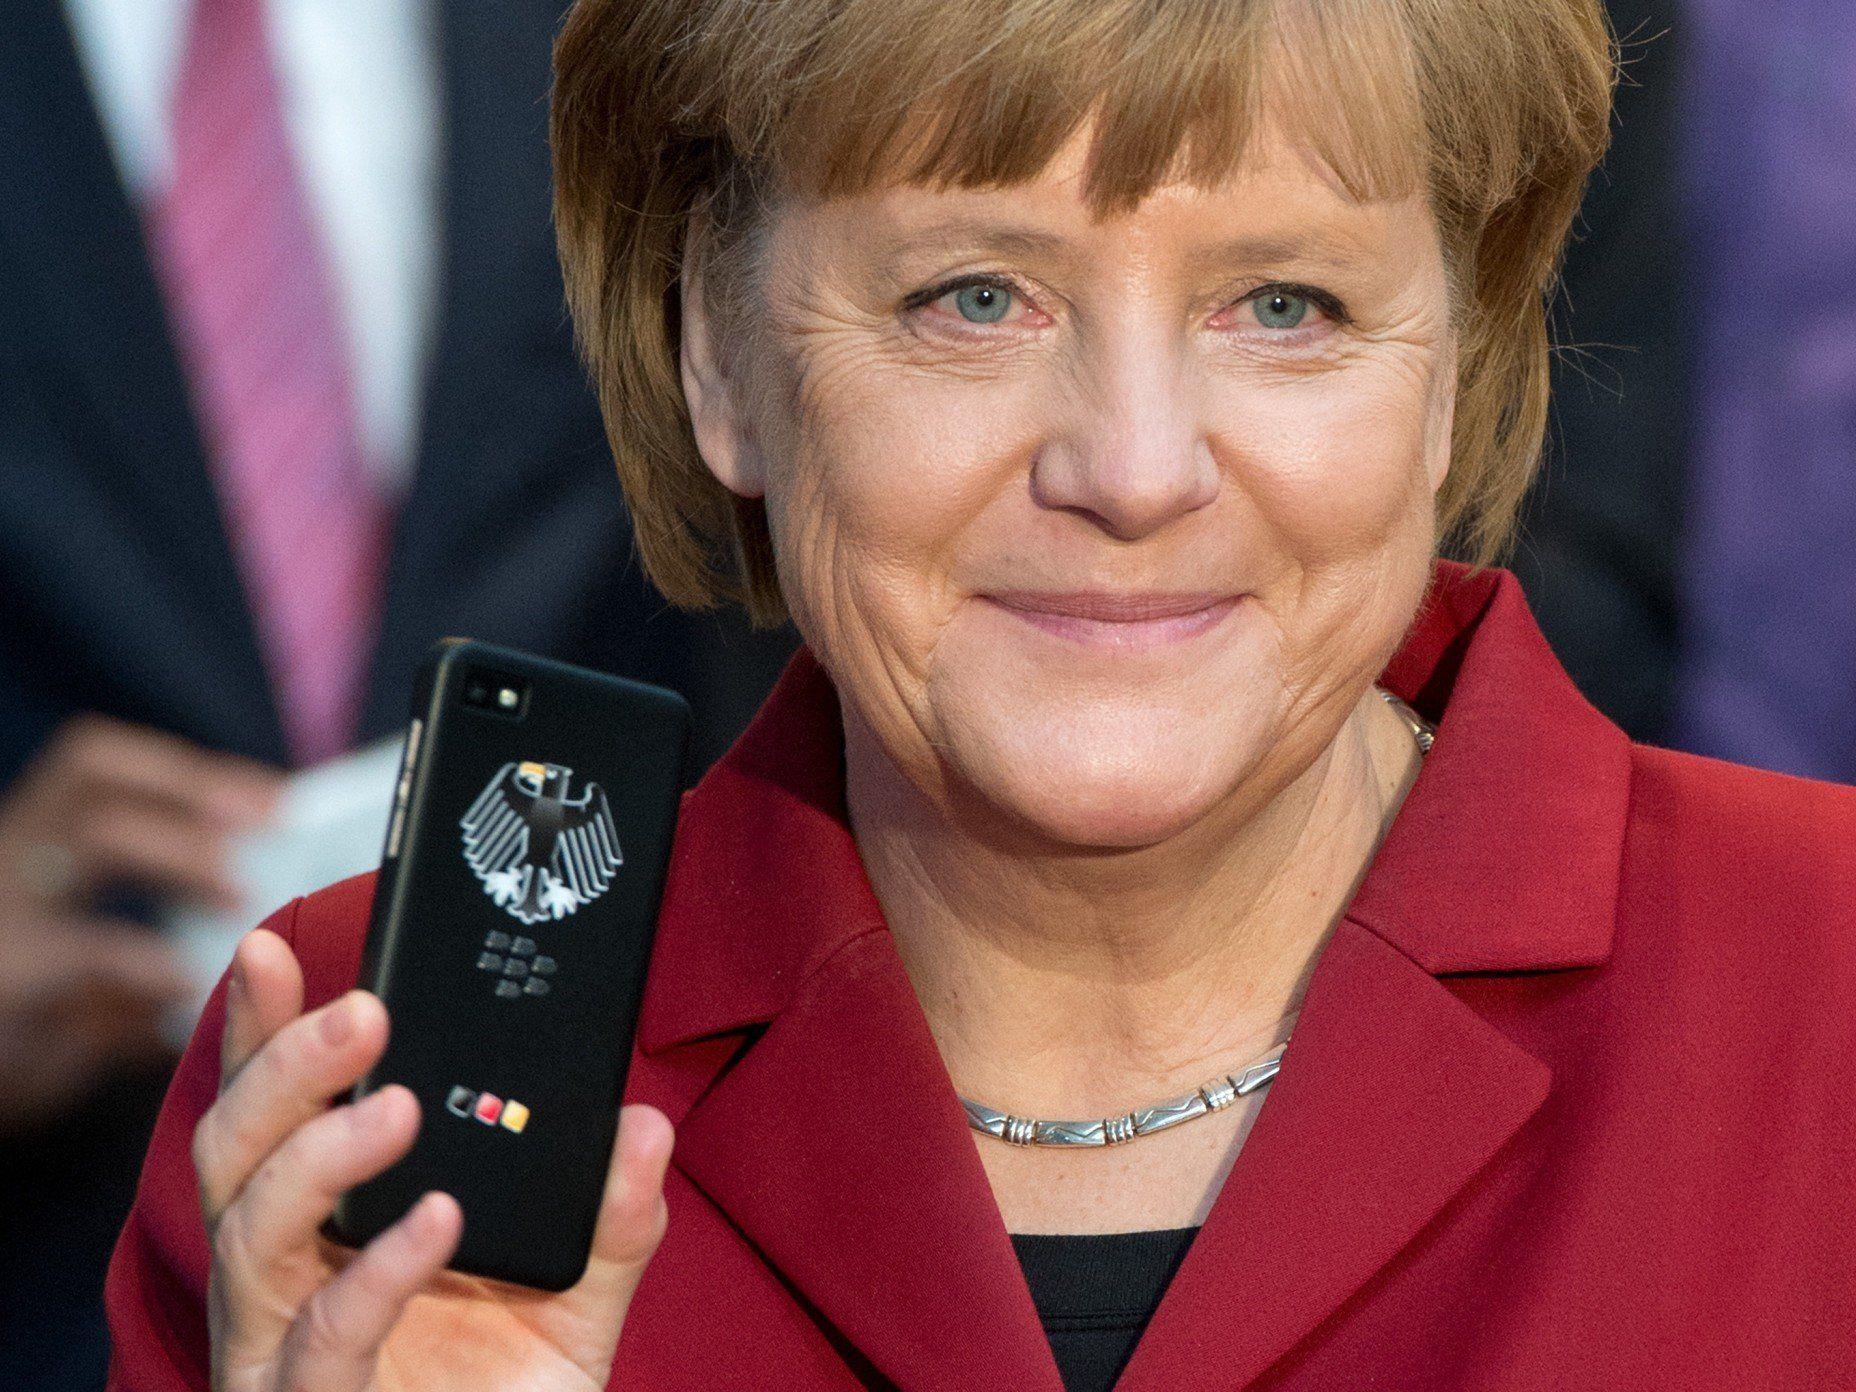 Angela Merkel auf der CeBIT 2013, in der Hand ein "abhörsicheres" Smartphone...